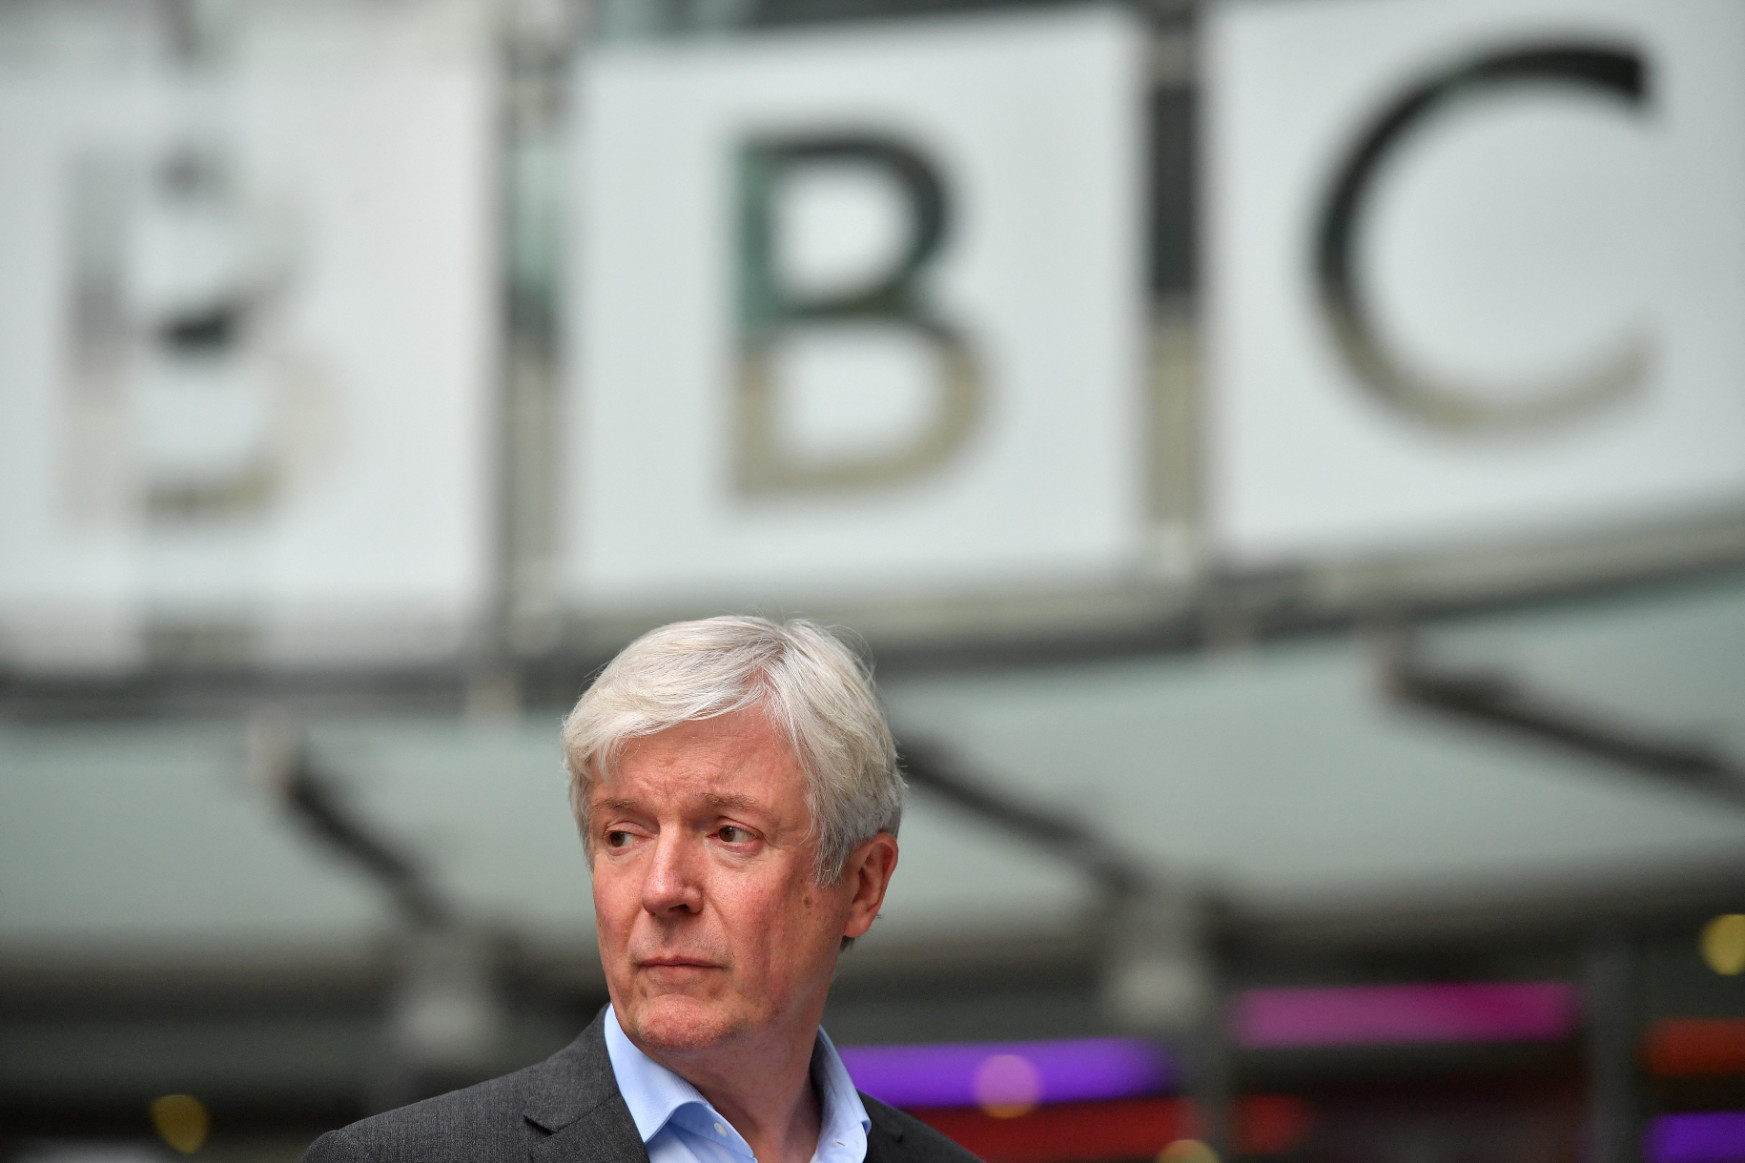 A BBC egykori igazgatója segített eltussolni a hazugságokat, amelyekkel rávették Diana hercegnőt a botrányos tévéinterjúra